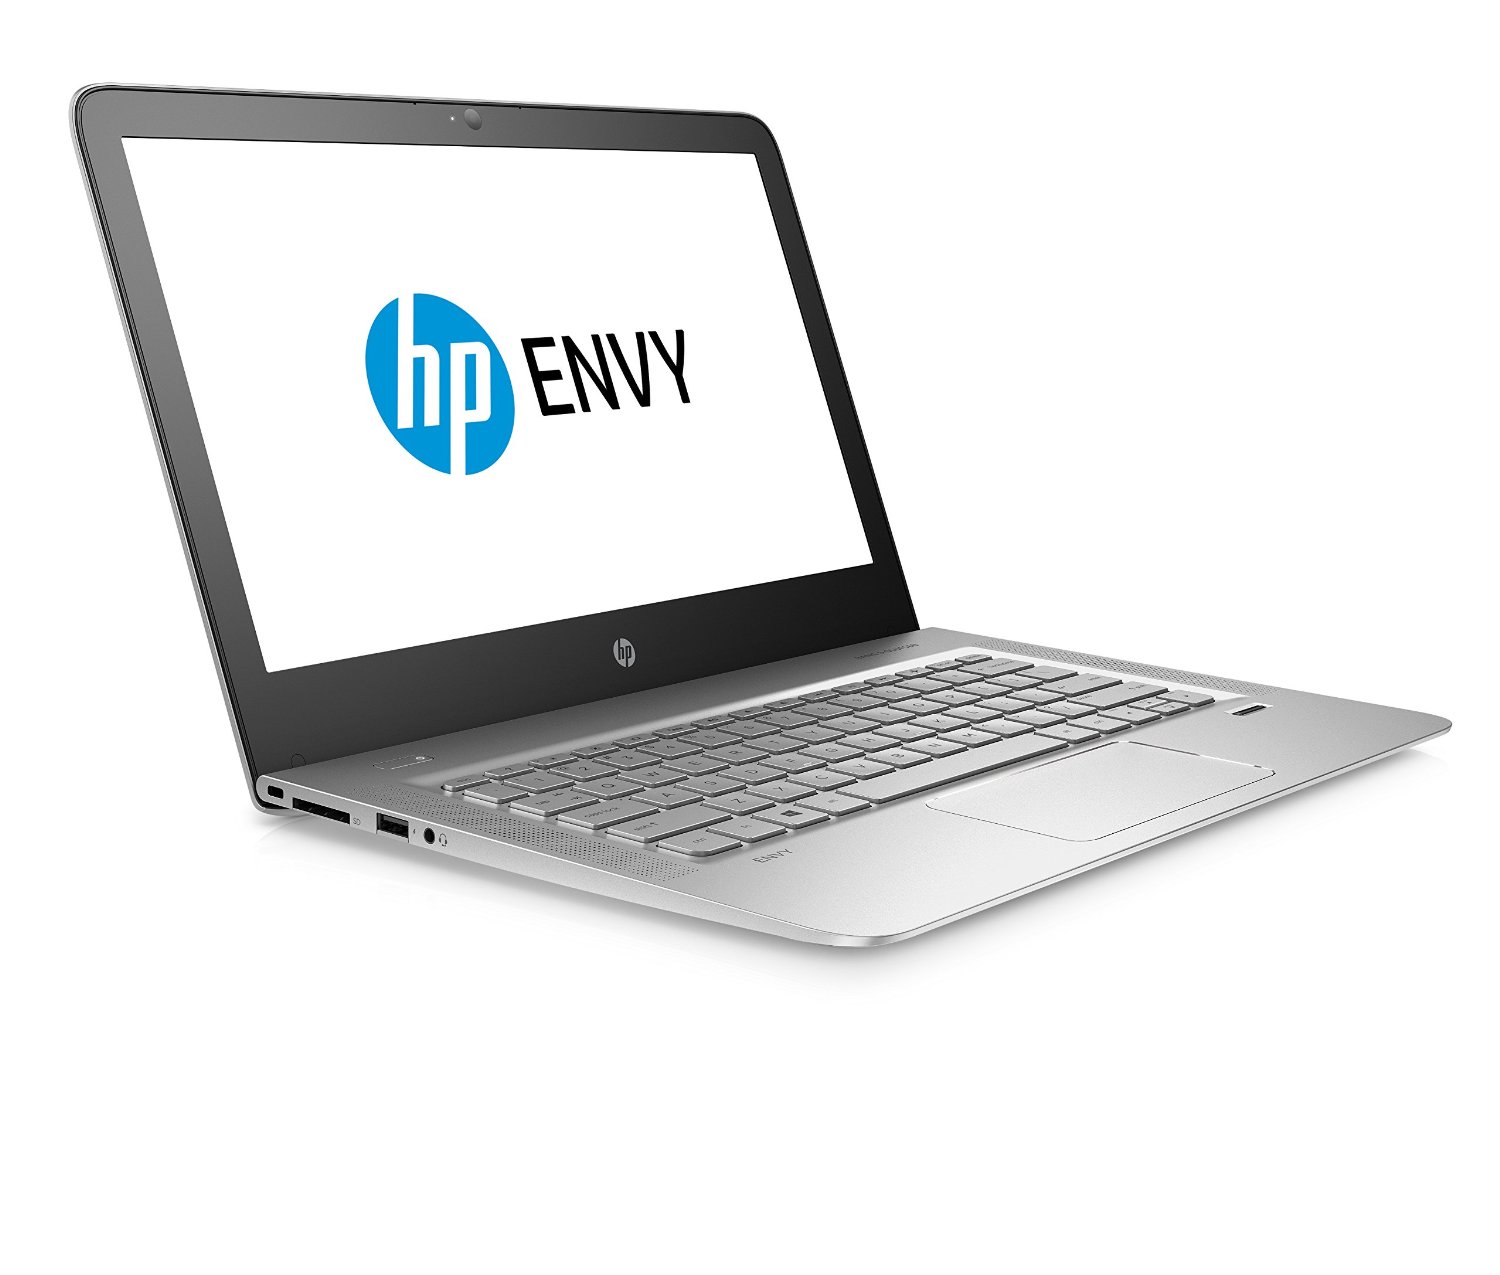 HP Envy 13-ab001ns